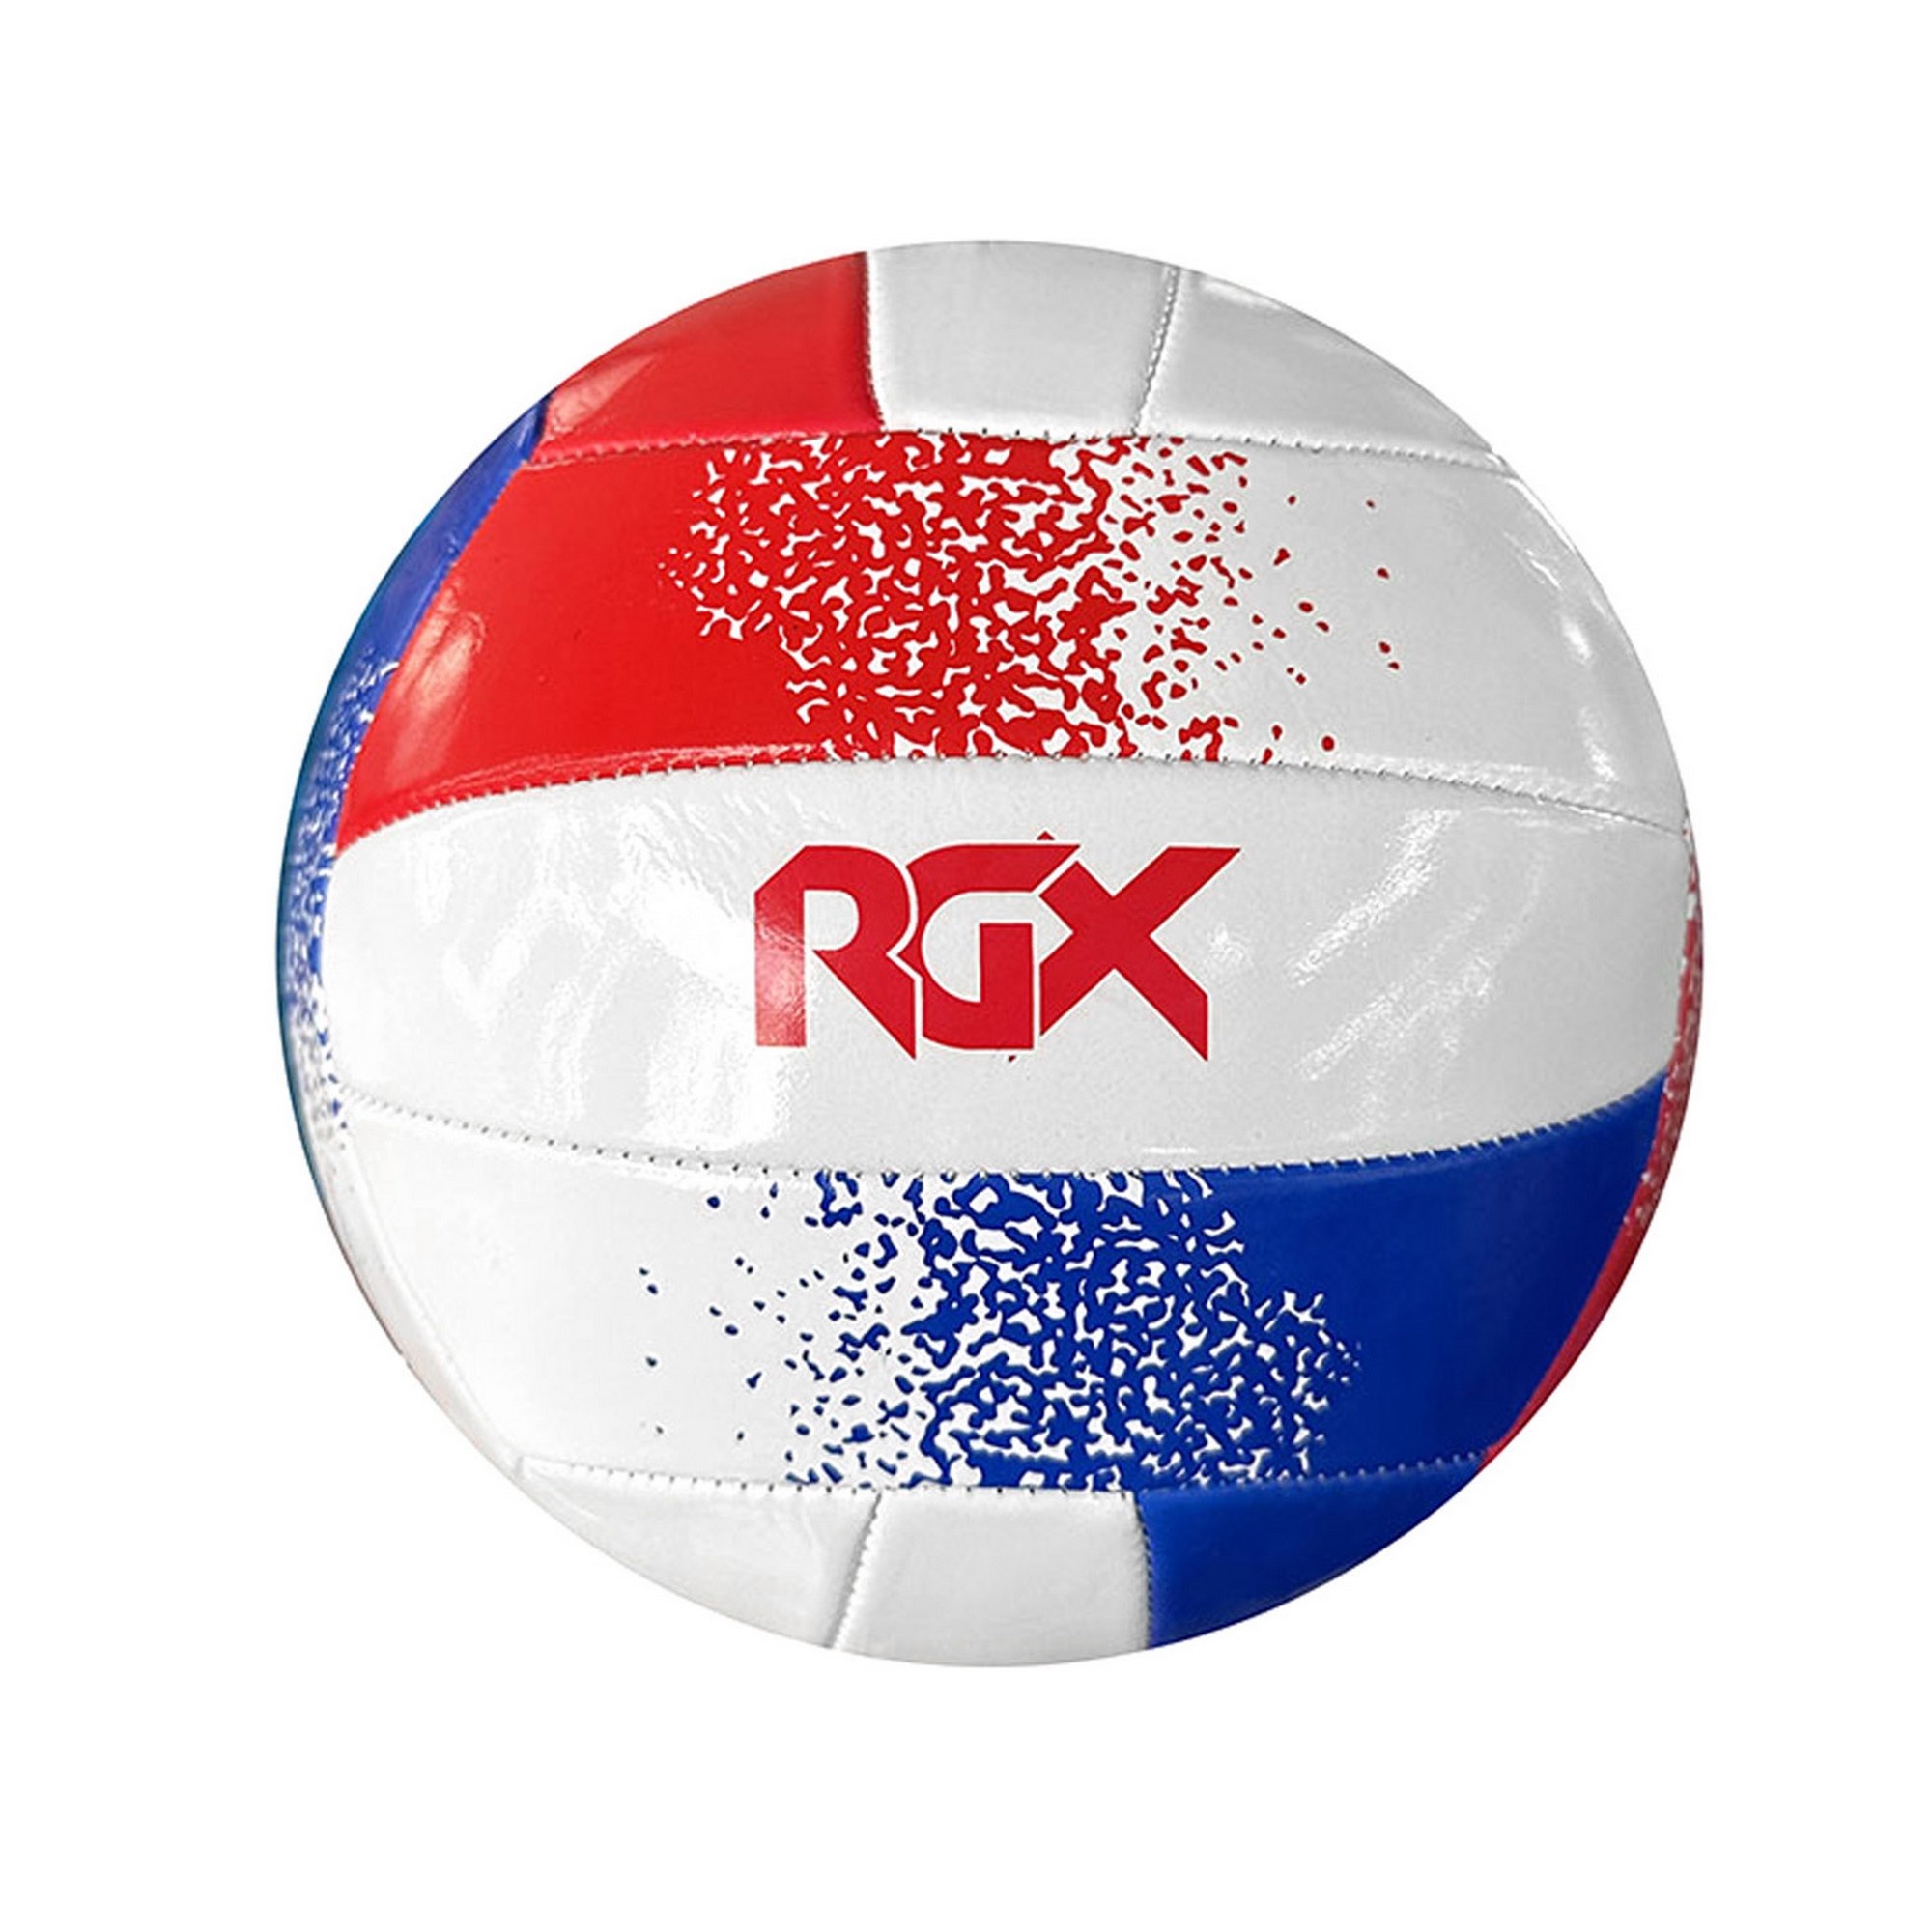 Мяч волейбольный RGX RGX-VB-10 р.5 2000_2000